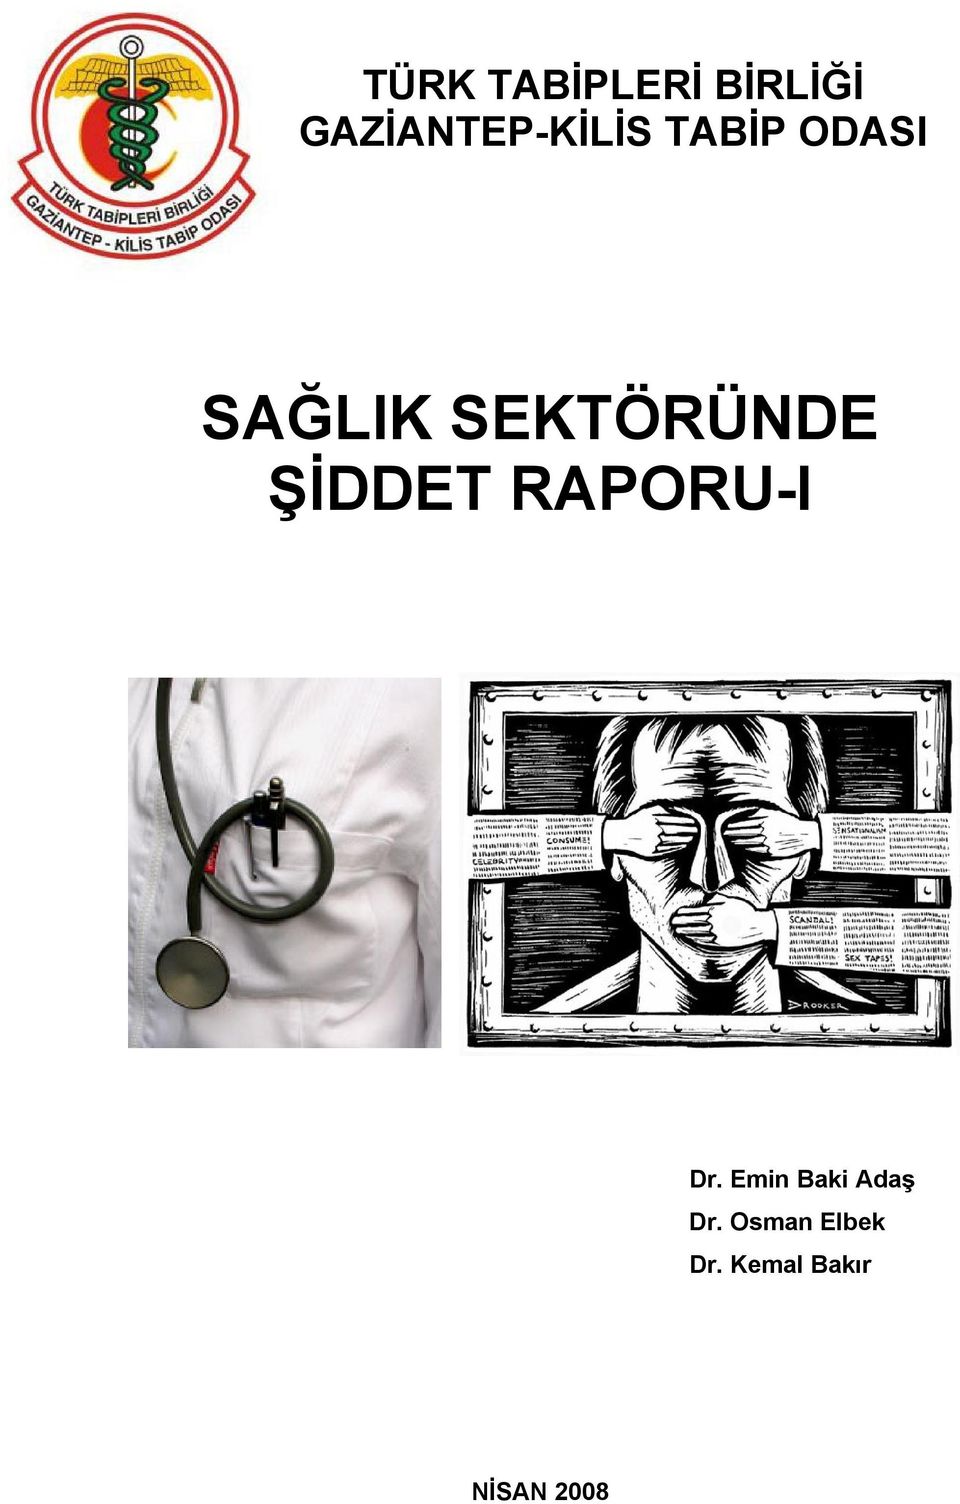 SEKTÖRÜNDE ŞİDDET RAPORU-I Dr.